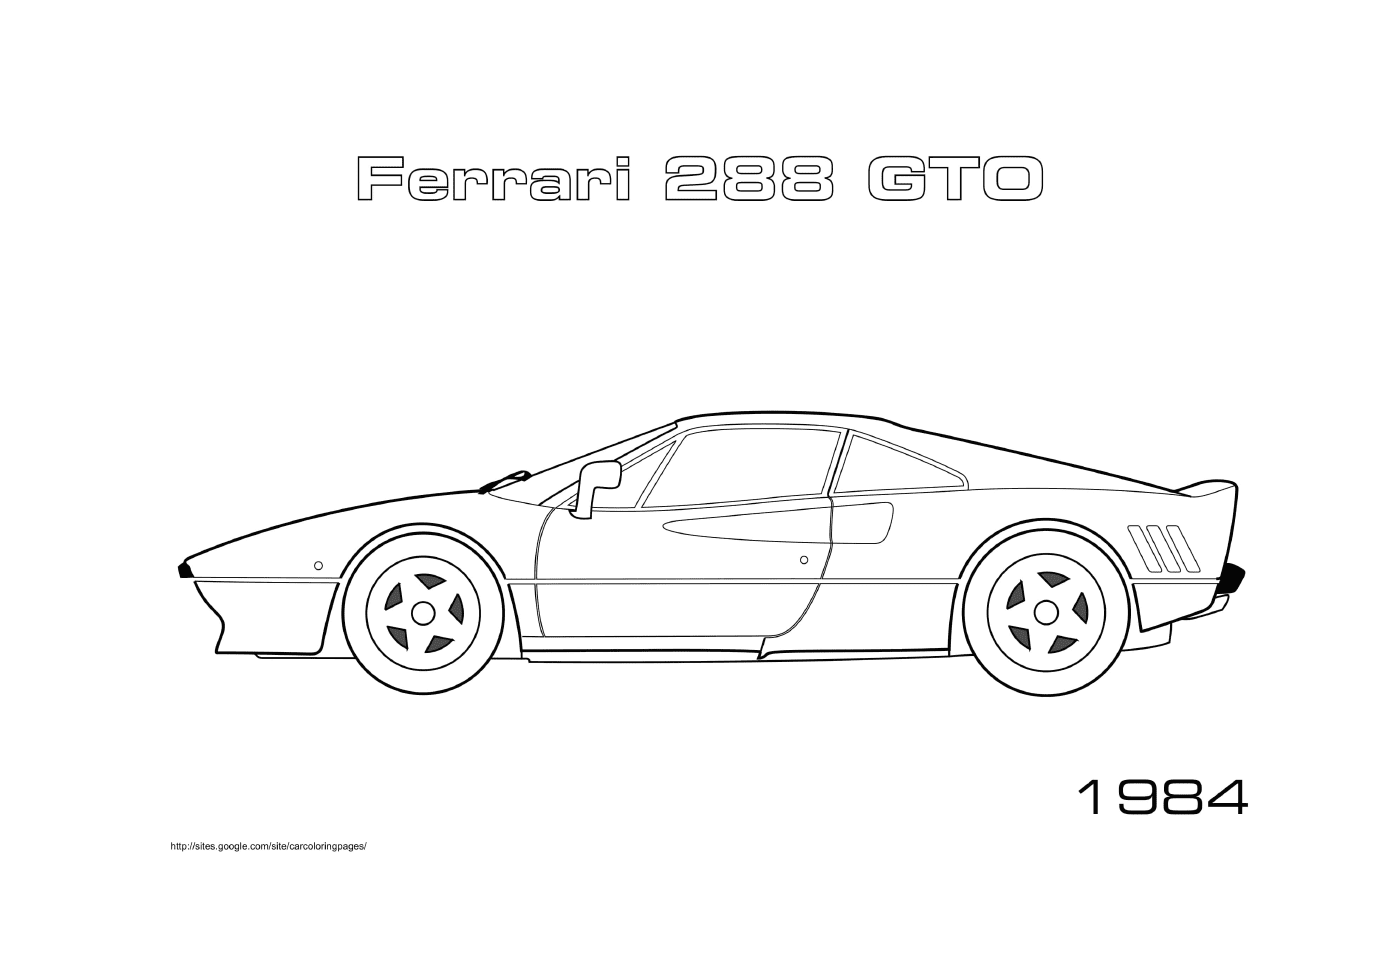  Un Ferrari 288 GTO 1984 